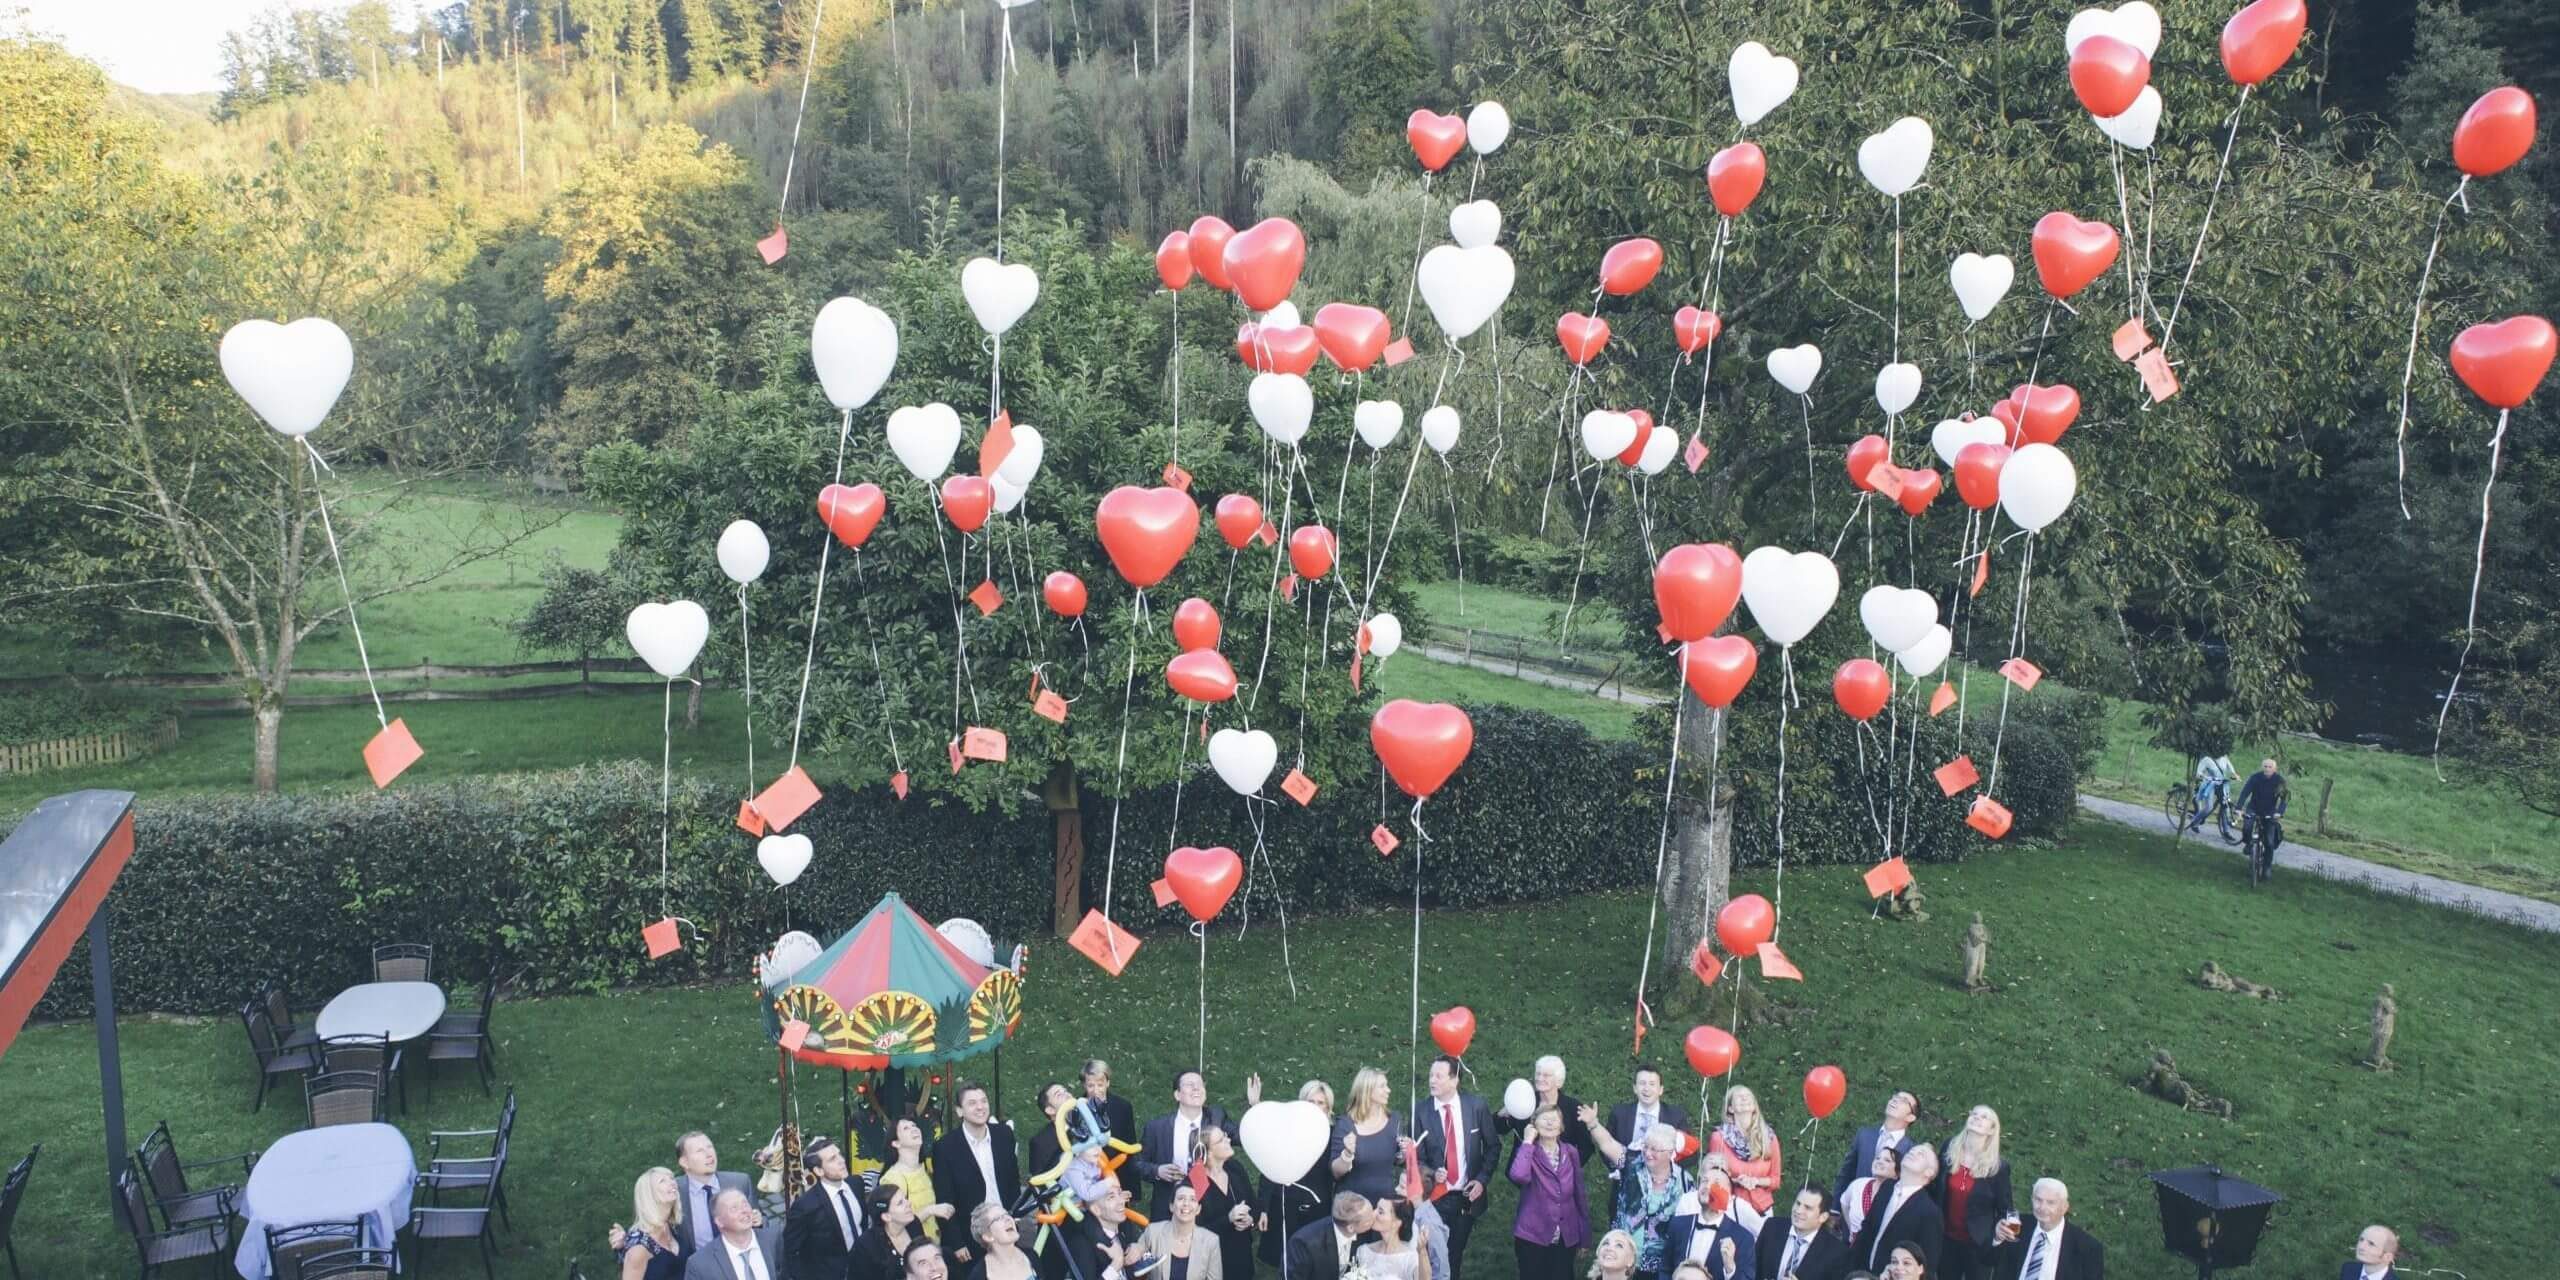 Start-Luftballons-Hochzeitsgesellschaft-Einfach-Heiraten-panorama